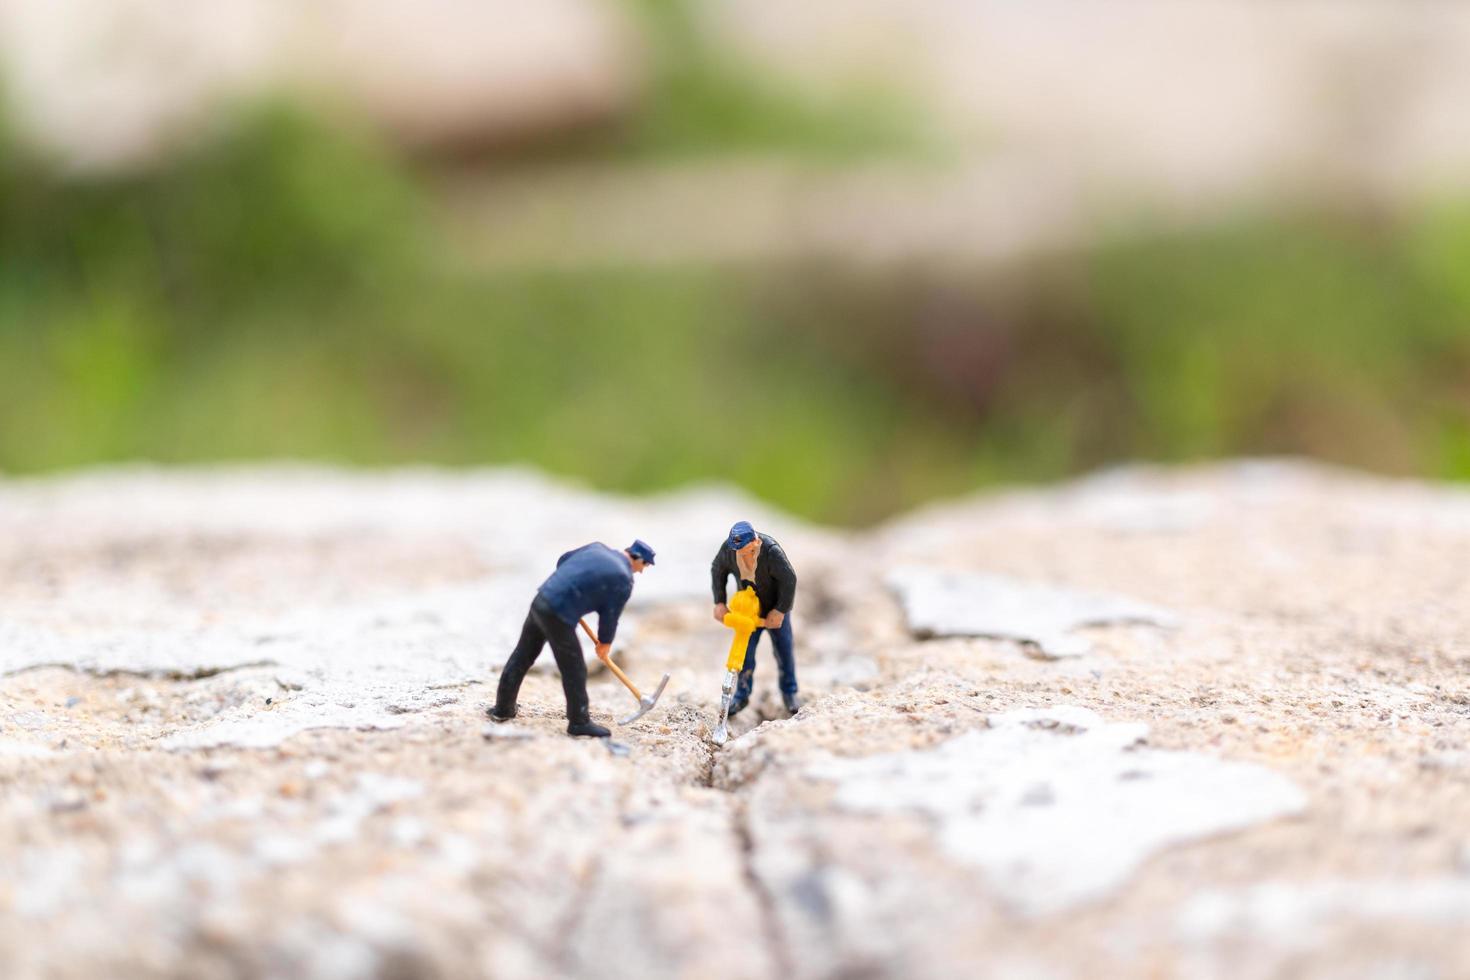 Miniaturarbeiter arbeiten an Beton mit Rissen, Teamwork-Konzept foto